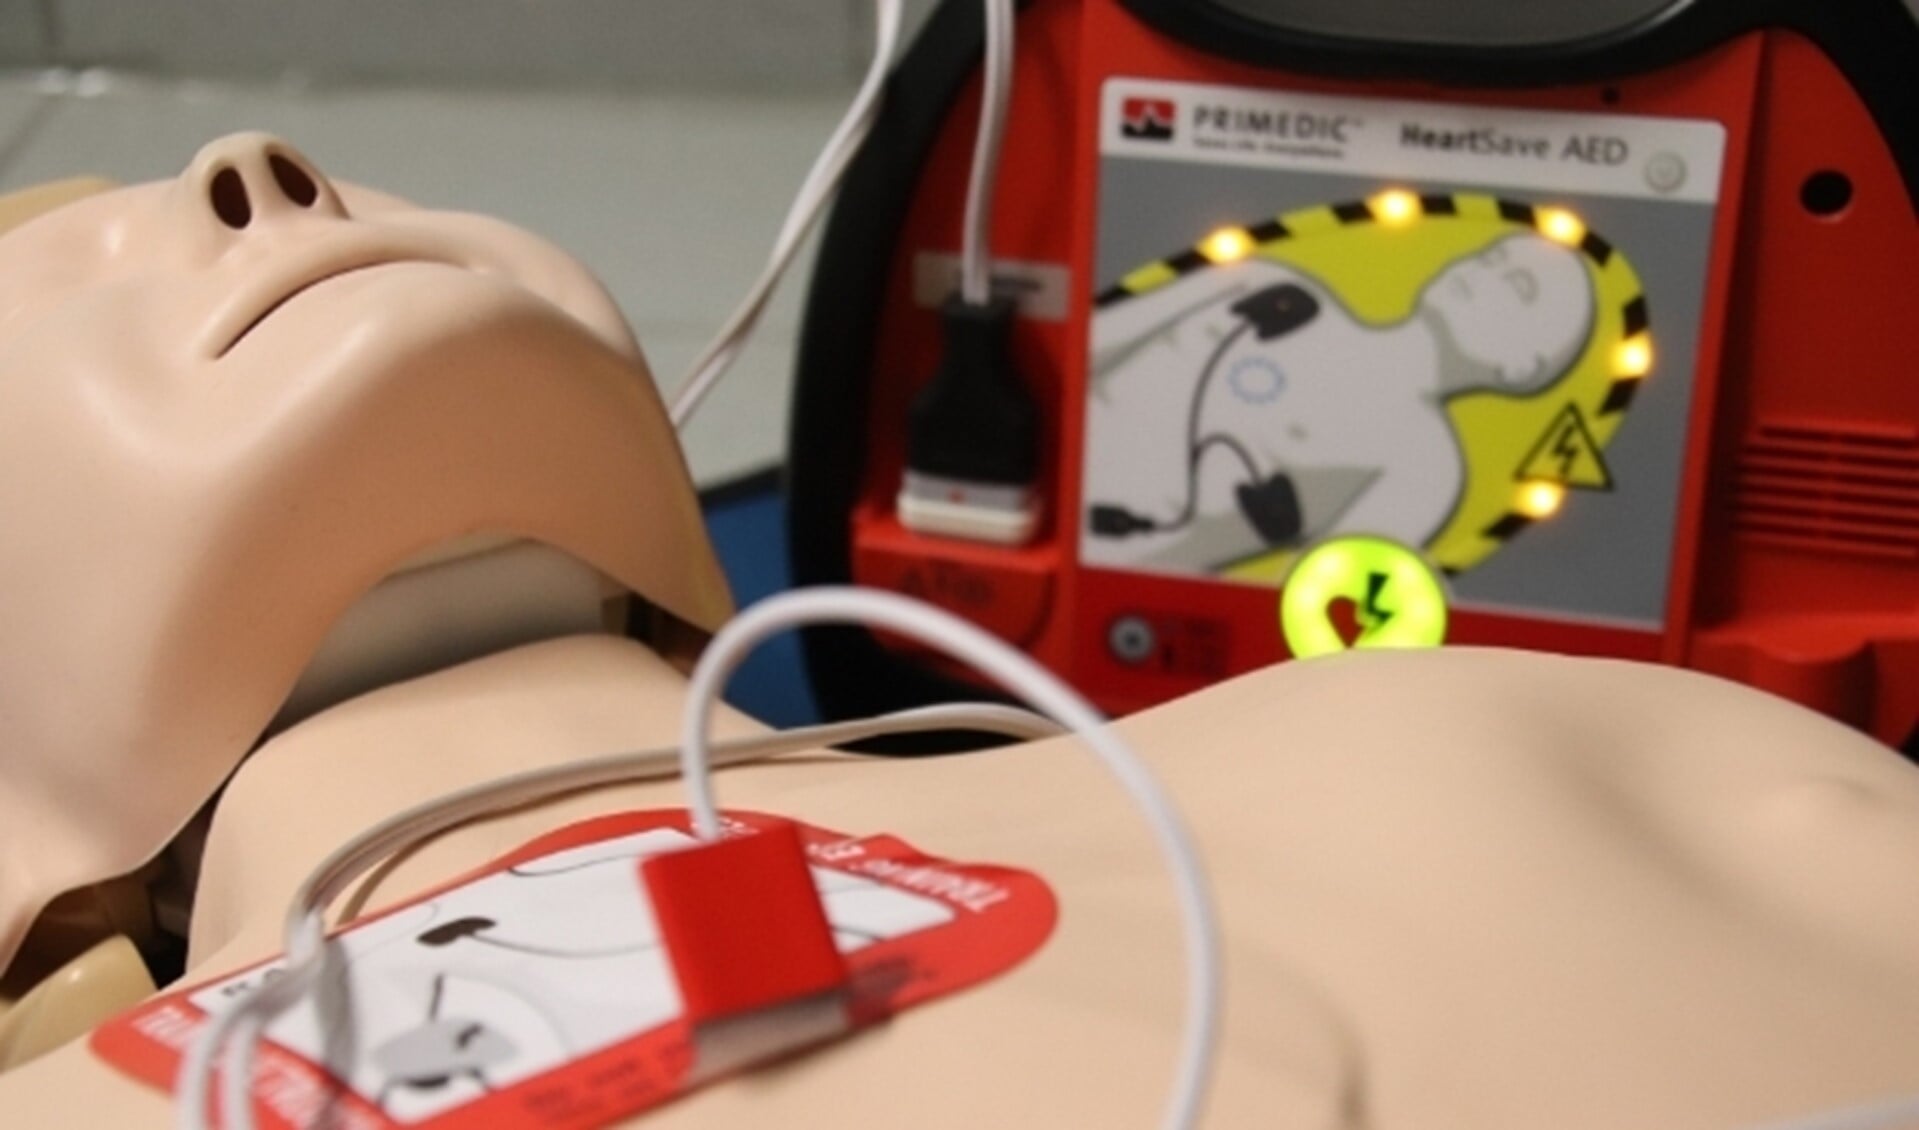 "Met een eigen AED redden we levens! Helpt u mee?"